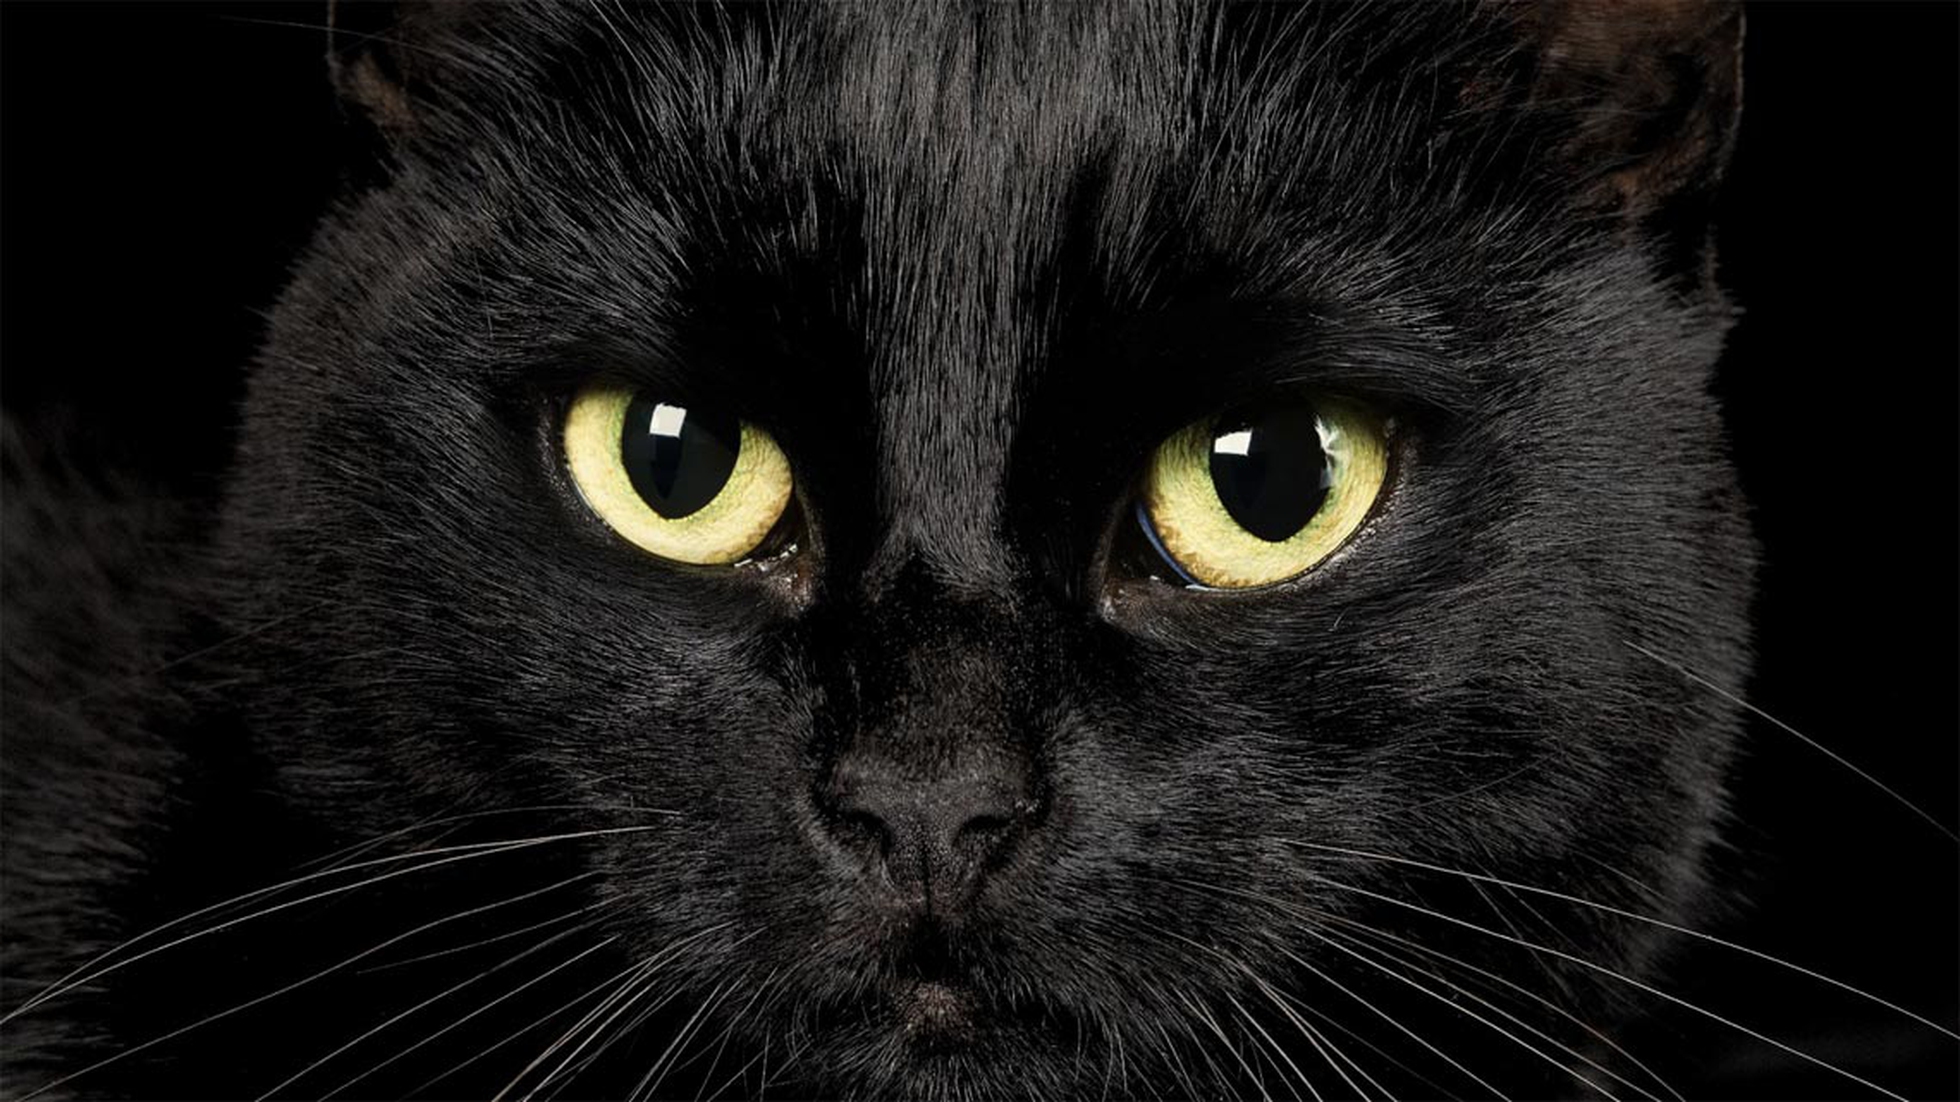 Il gatto nero è un talismano e porta fortuna. Ecco perché